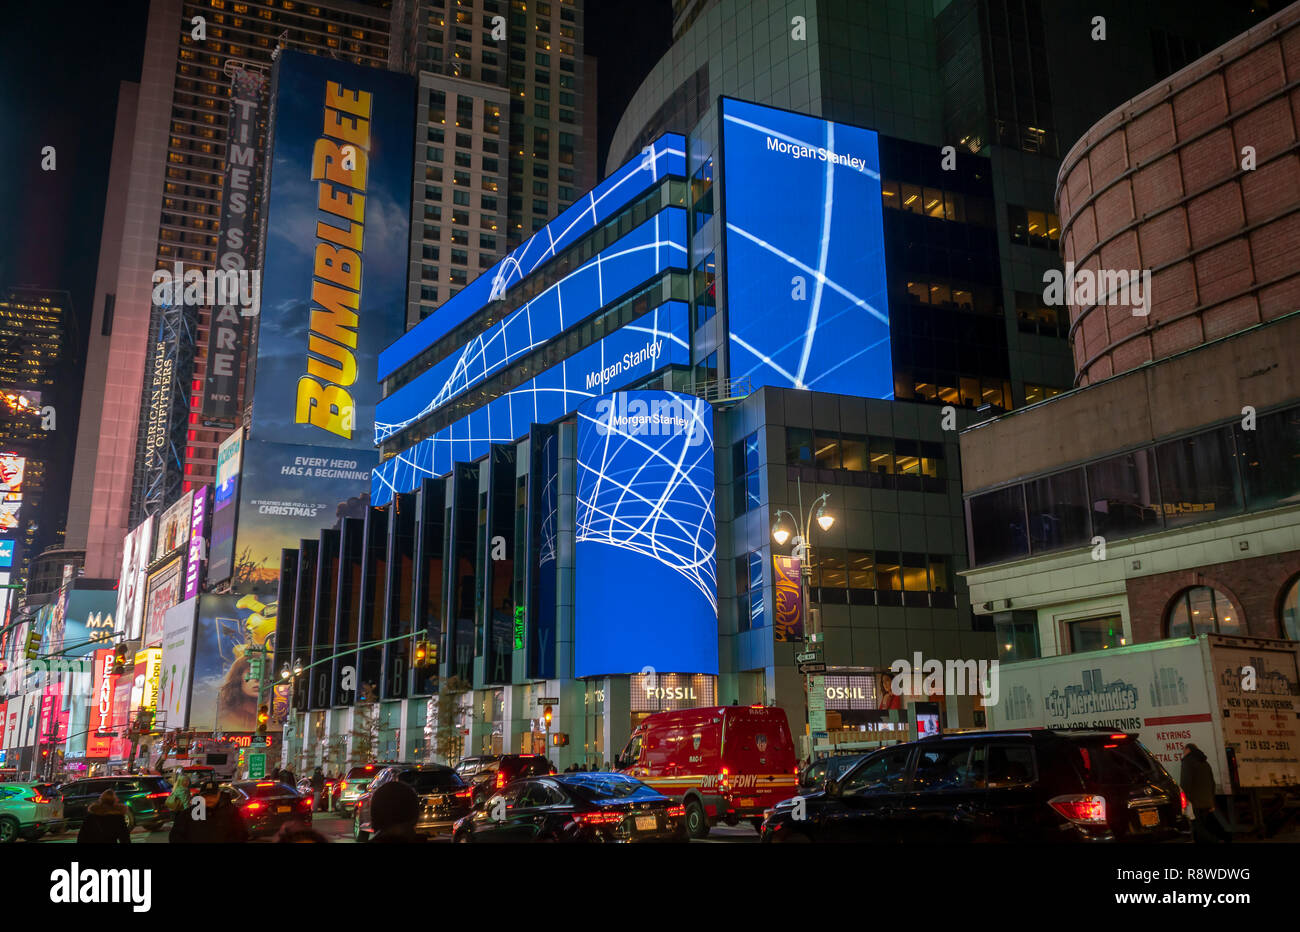 New York,NY/USA-Le 12 décembre 2018, Morgan Stanley s'engage dans l'auto-promotion sur l'affichage numérique sur leurs capacités à New York le Mardi, Décembre 12, 2018. (Â© Richard B. Levine) Banque D'Images